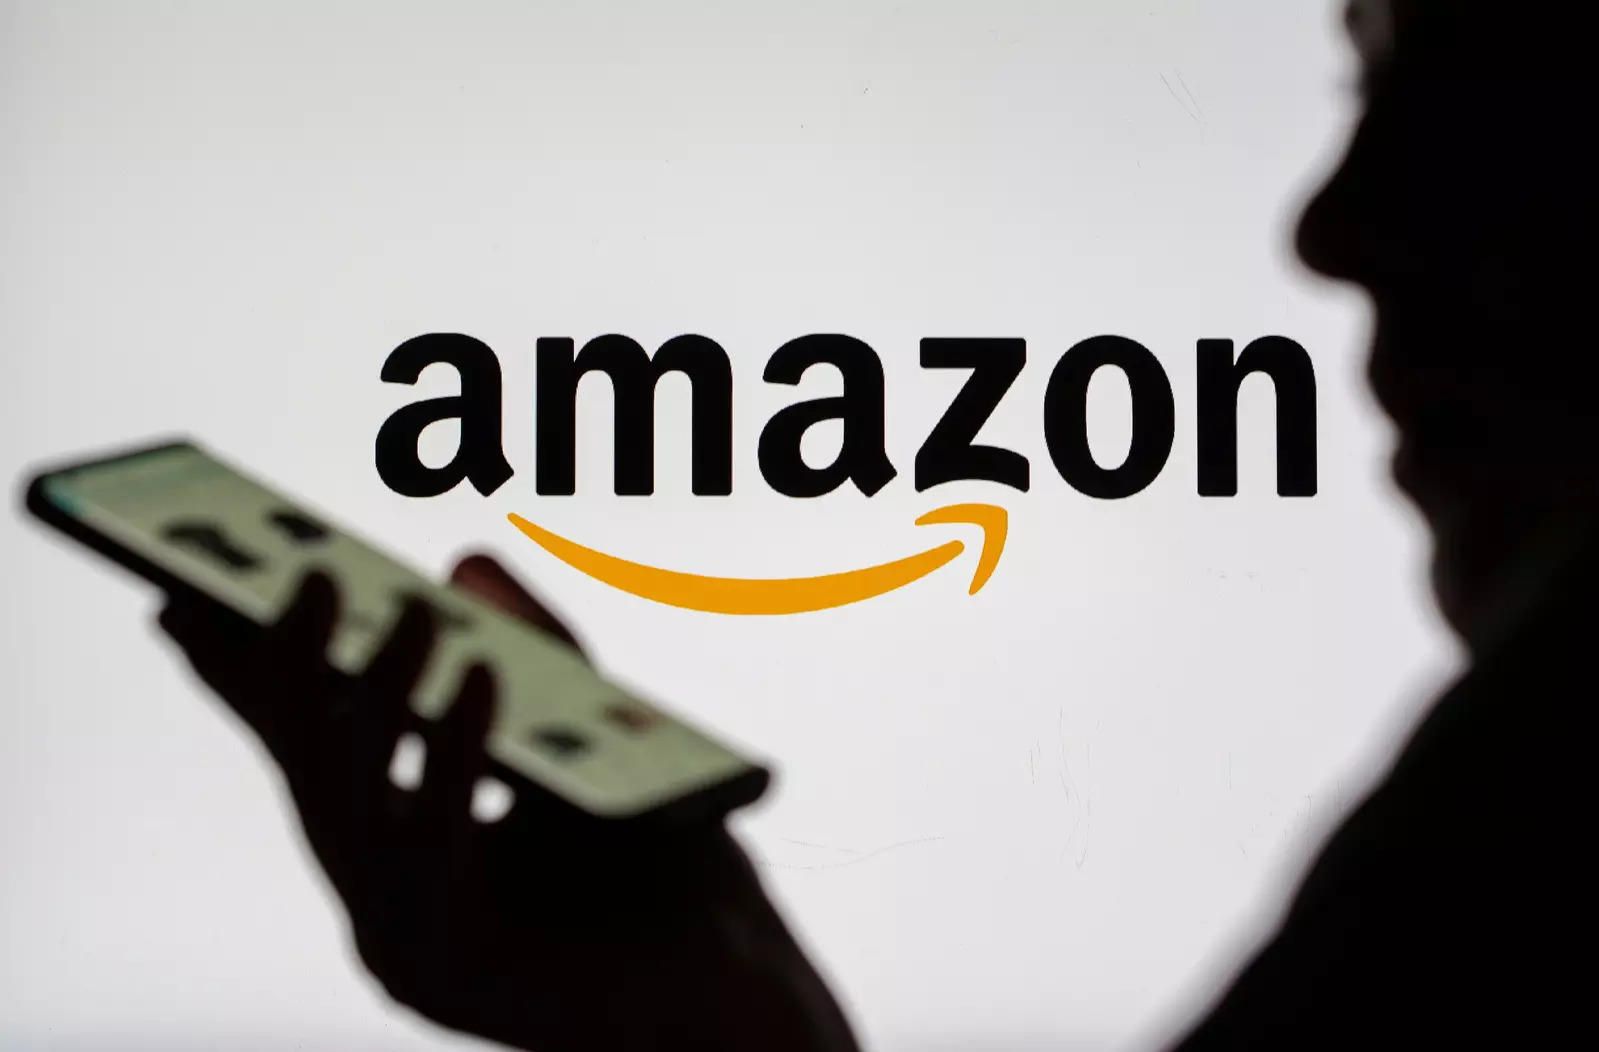 Amazon đối mặt vụ kiện tỷ USD vì sử dụng thuật toán để thâu tóm thị trường Amazon đối mặt vụ kiện tỷ USD vì sử dụng thuật toán để thâu tóm thị trường Amazon đối mặt vụ kiện tỷ USD vì sử dụng thuật toán để thâu tóm thị trường Amazon đối mặt vụ kiện tỷ USD vì sử dụng thuật toán để thâu tóm thị trường